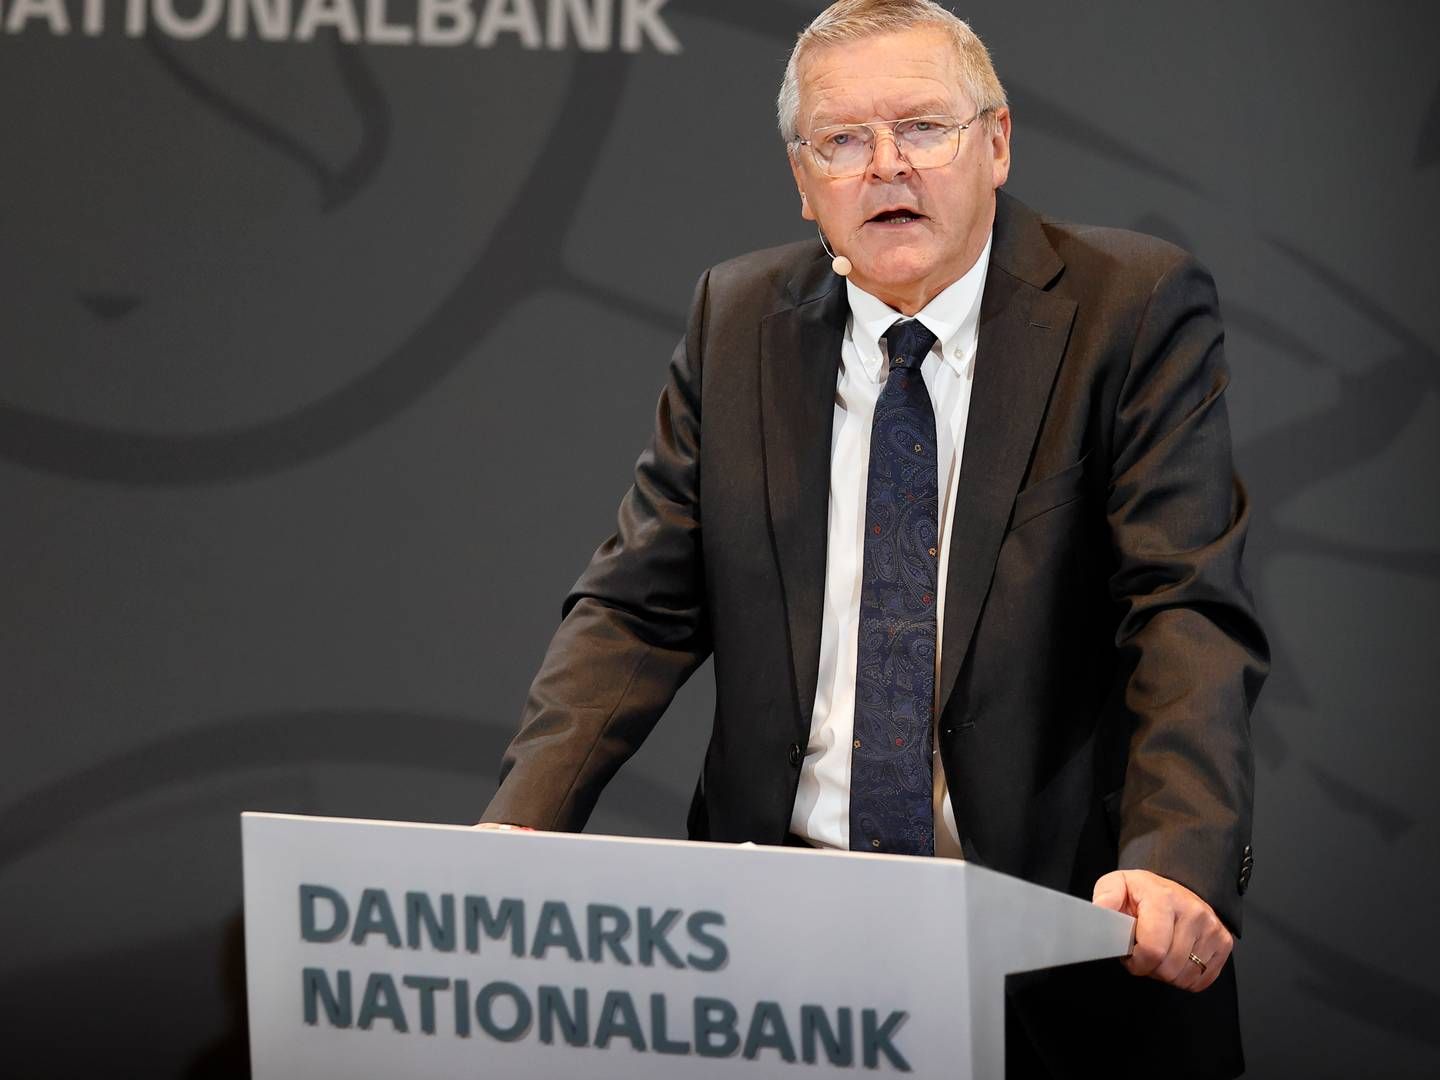 Nationalbankdirektør Lars Rohde har sidste arbejdsdag på tirsdag i næste uge. | Foto: Jens Dresling